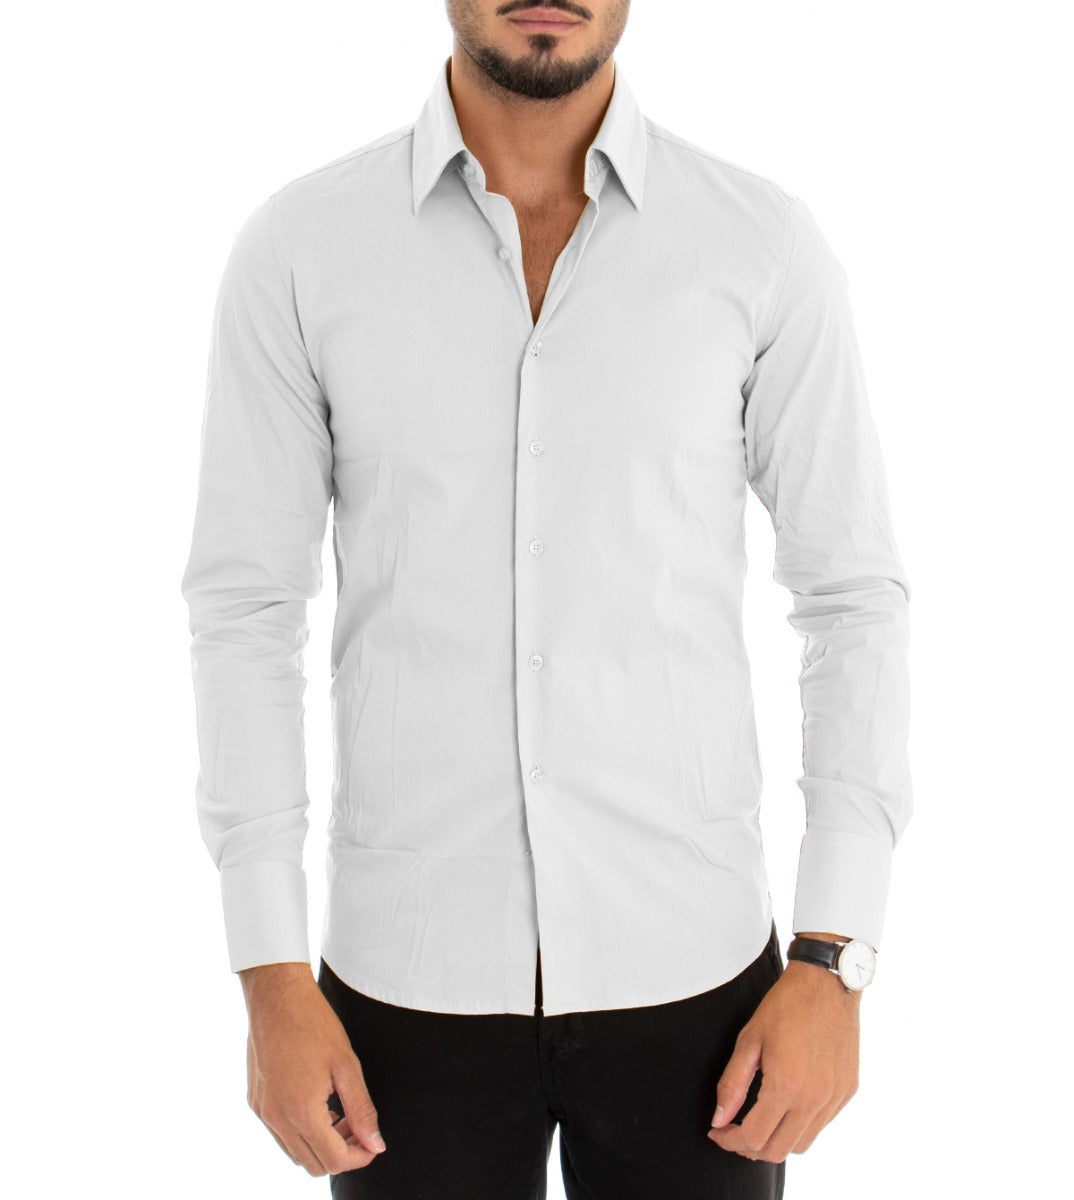 Camicia Uomo Con Colletto Manica Lunga Slim Fit Basic Casual Cotone Bianco GIOSAL-C1811A